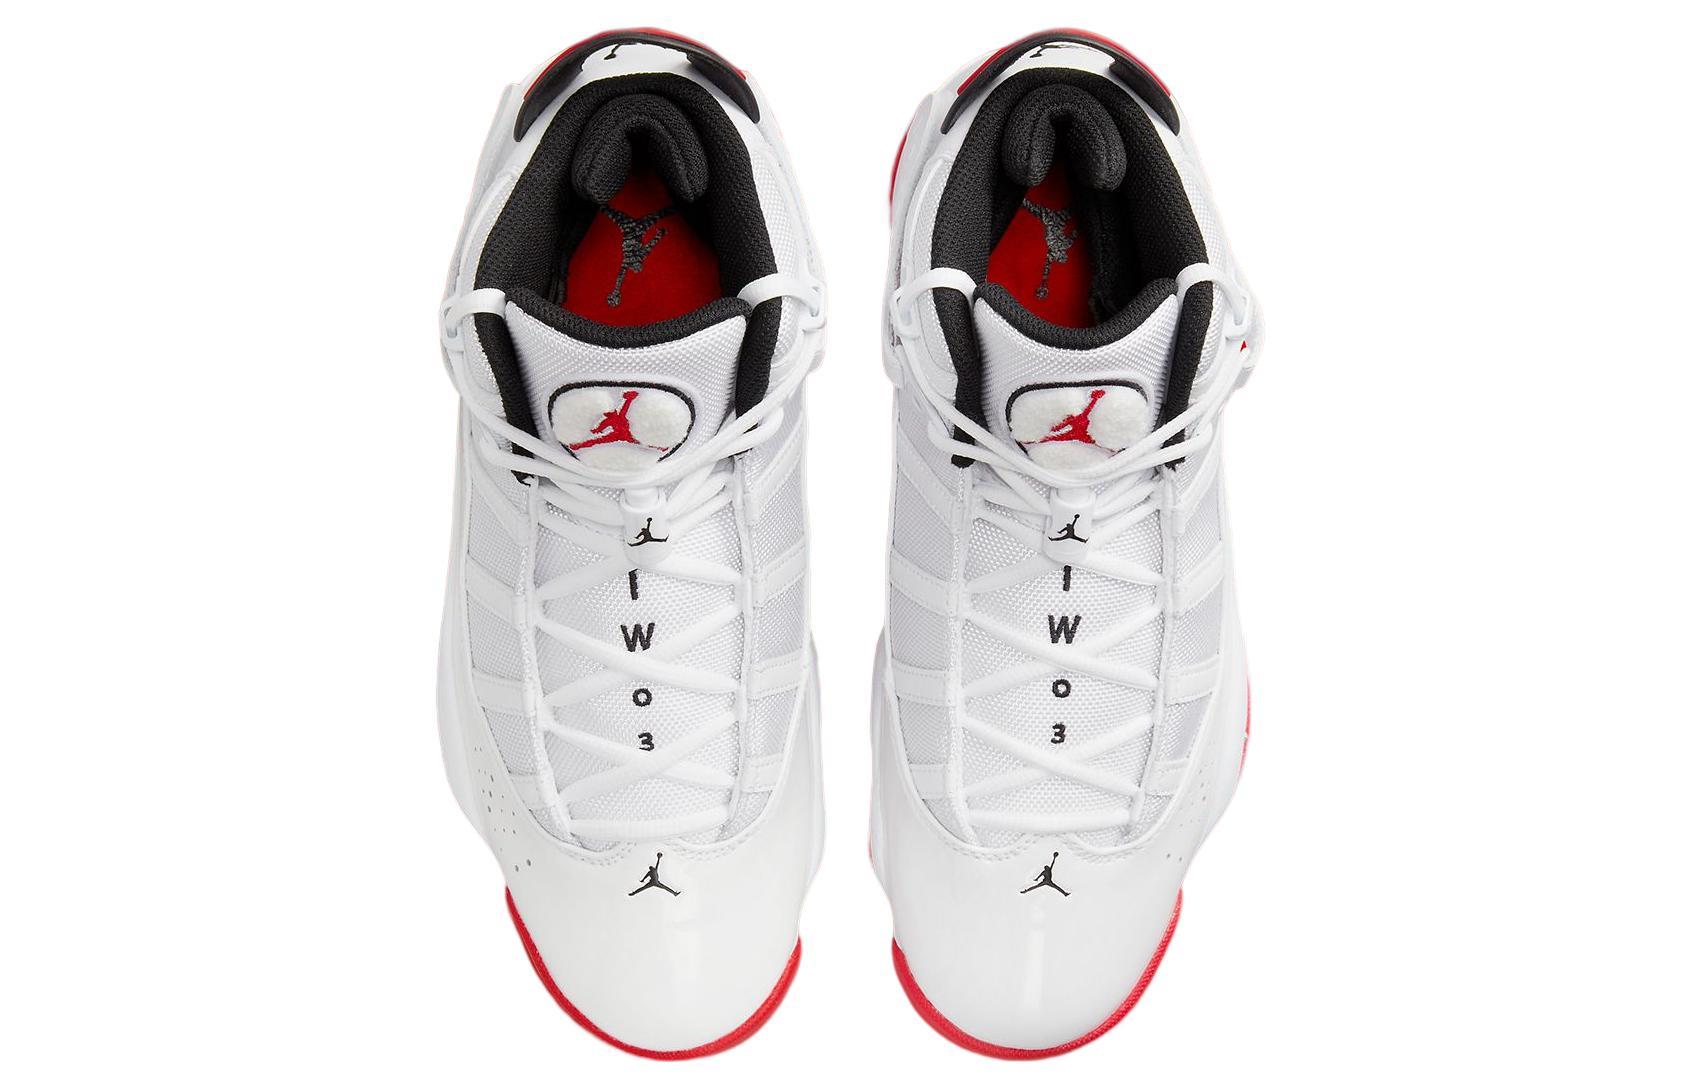 Jordan Air Jordan 6 Rings "White University Red"